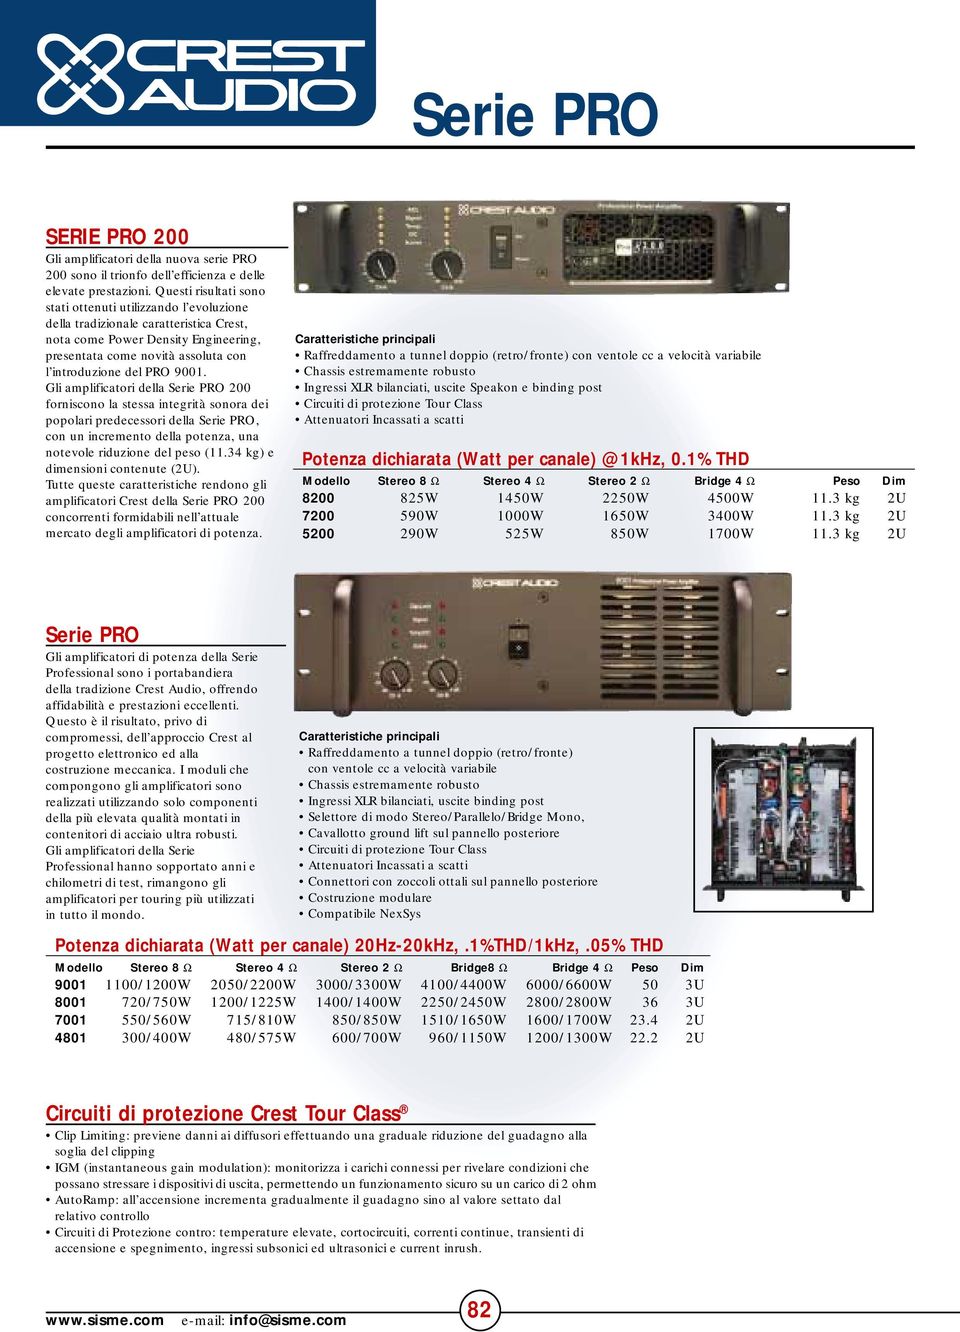 9001. Gli amplificatori della Serie PRO 200 forniscono la stessa integrità sonora dei popolari predecessori della Serie PRO, con un incremento della potenza, una notevole riduzione del peso (11.